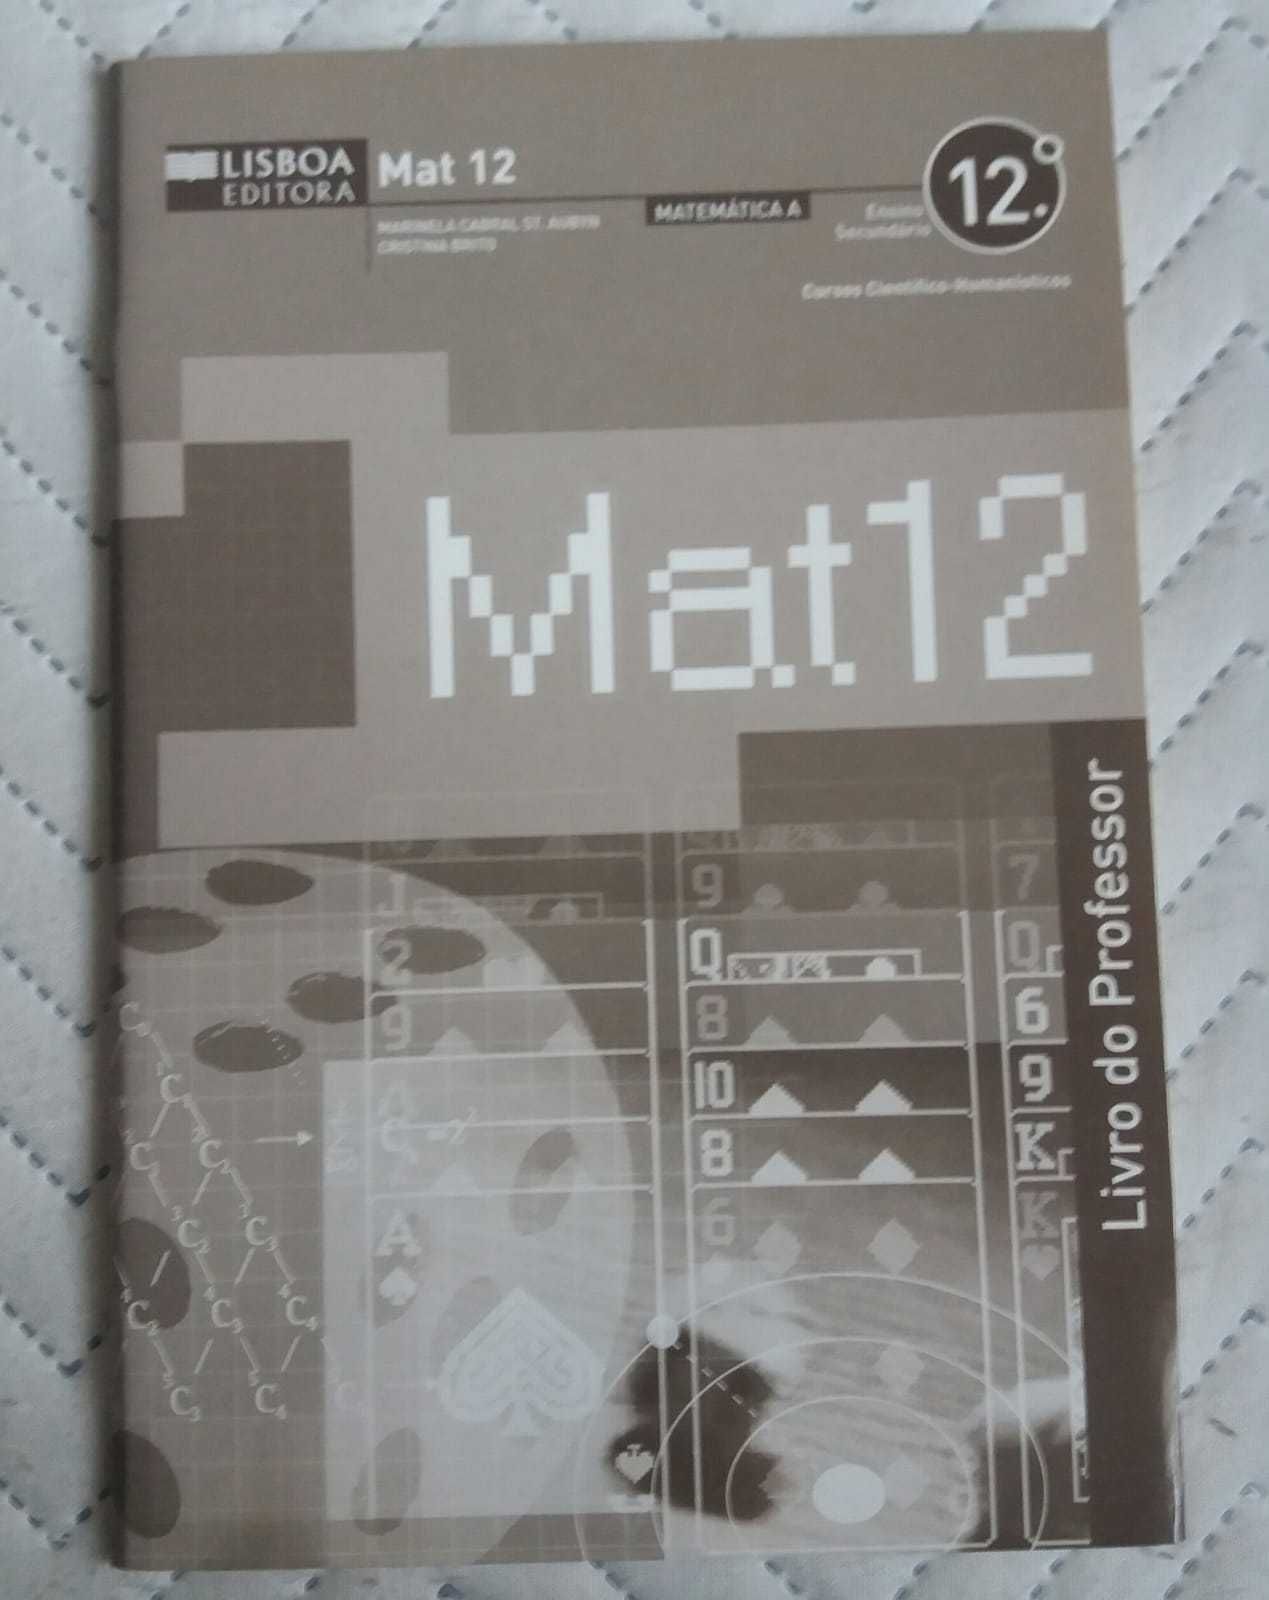 Manuais Mat12 Partes 1, 2 e 3 + Livro do Professor